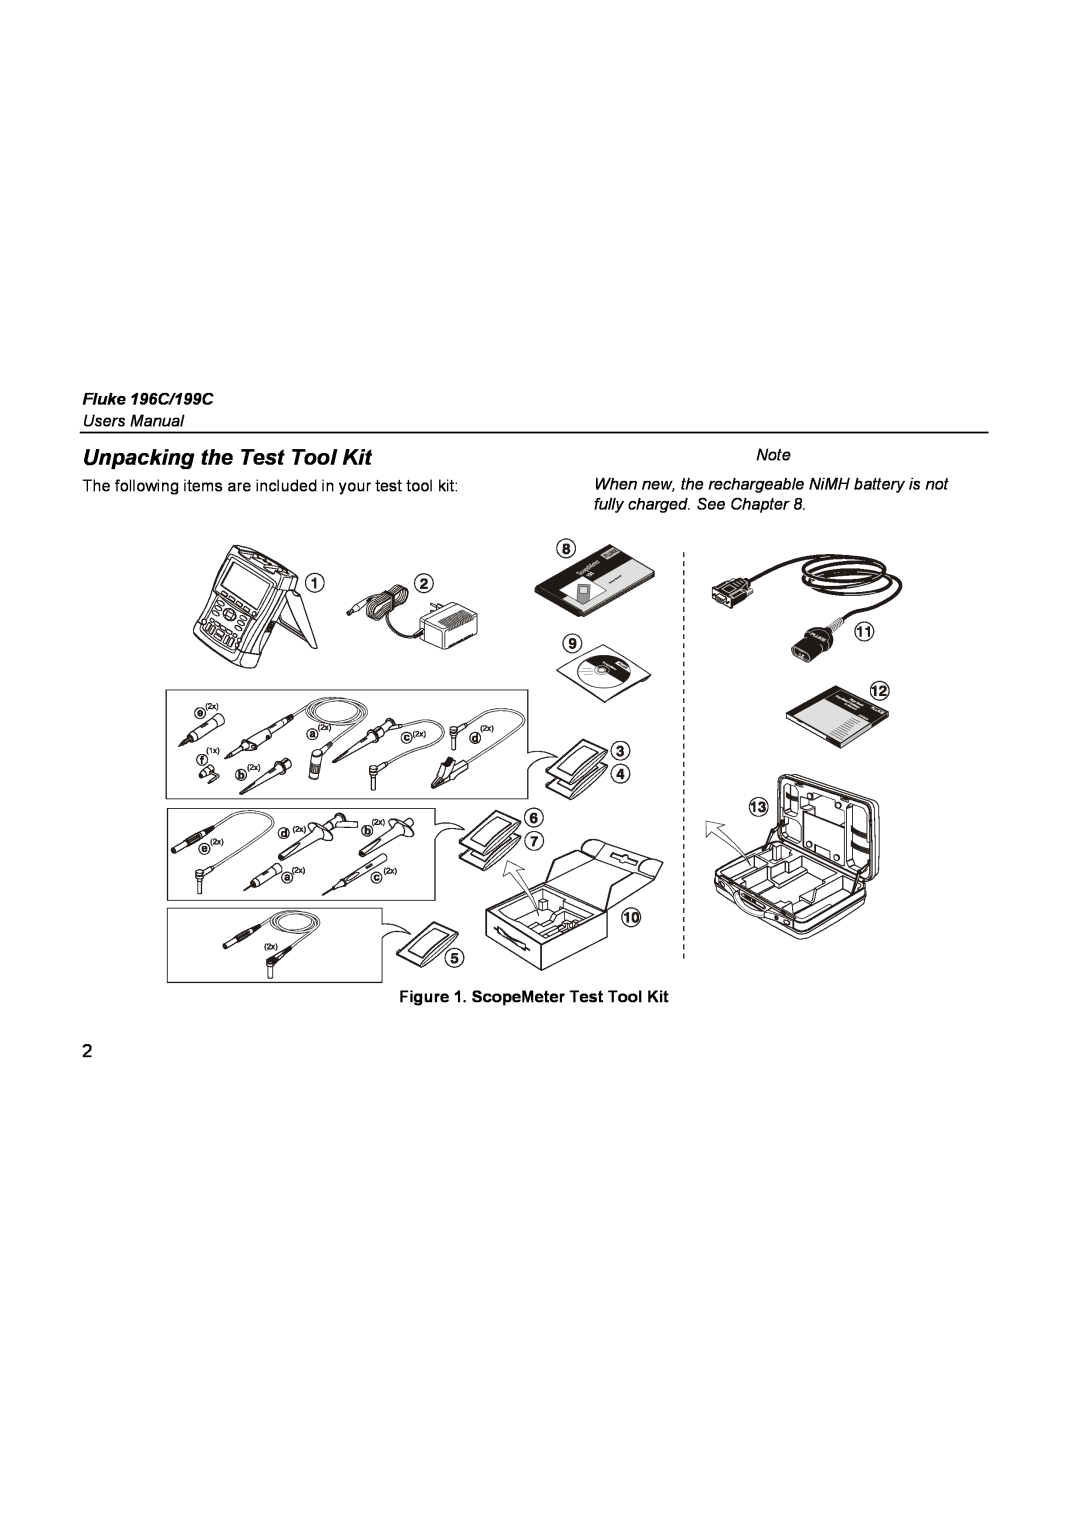 Fluke user manual Unpacking the Test Tool Kit, Fluke 196C/199C, fully charged. See Chapter, ScopeMeter Test Tool Kit 